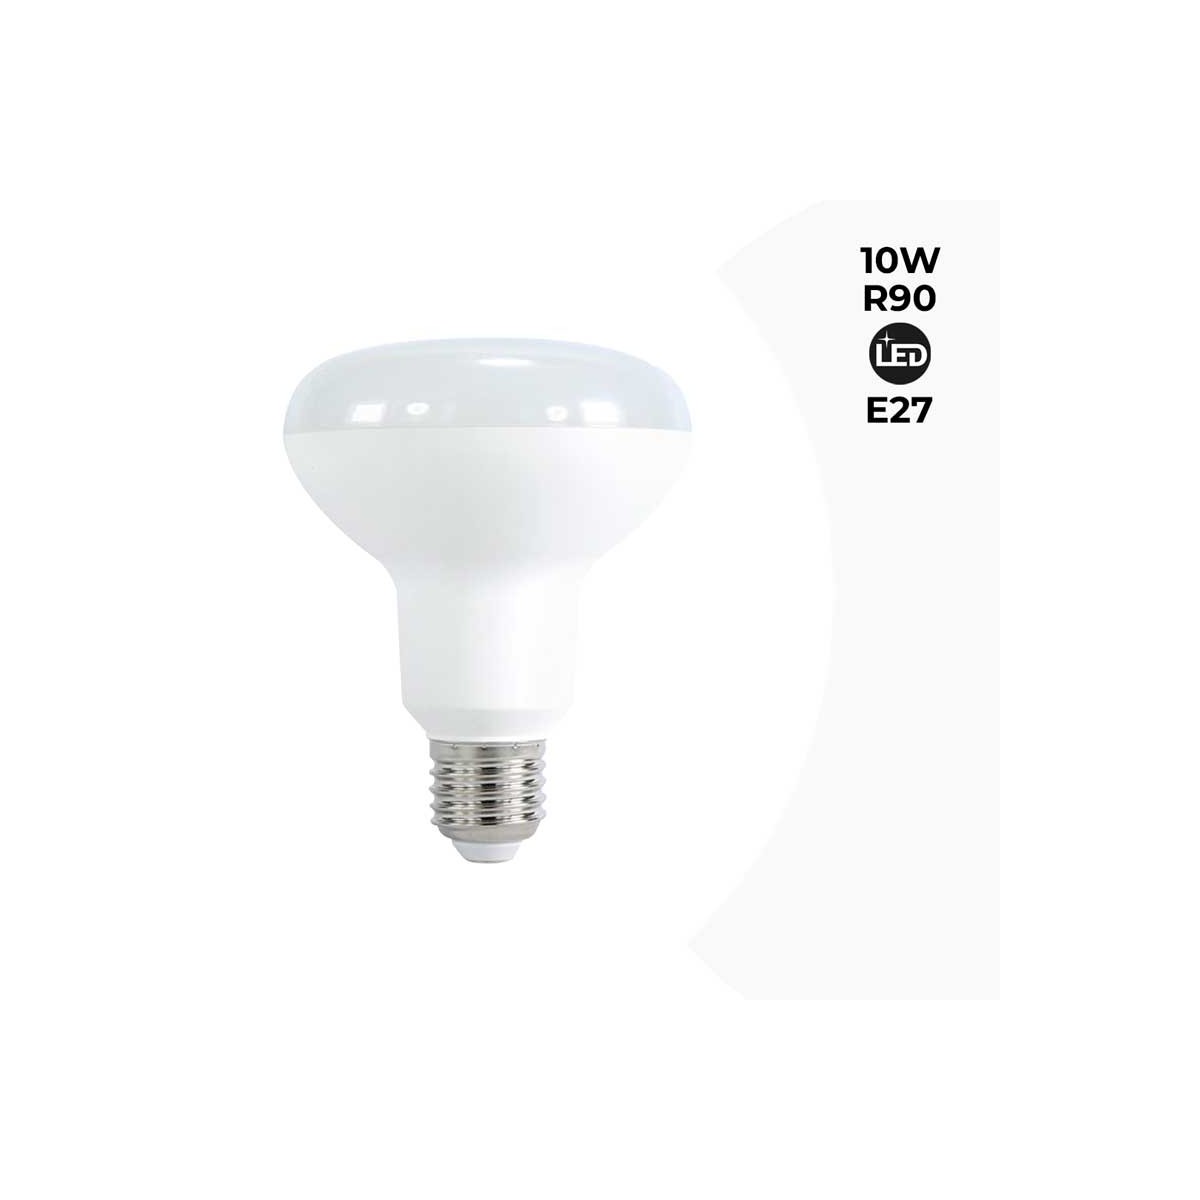 R90 Reflector LED Bulb 10W - E27